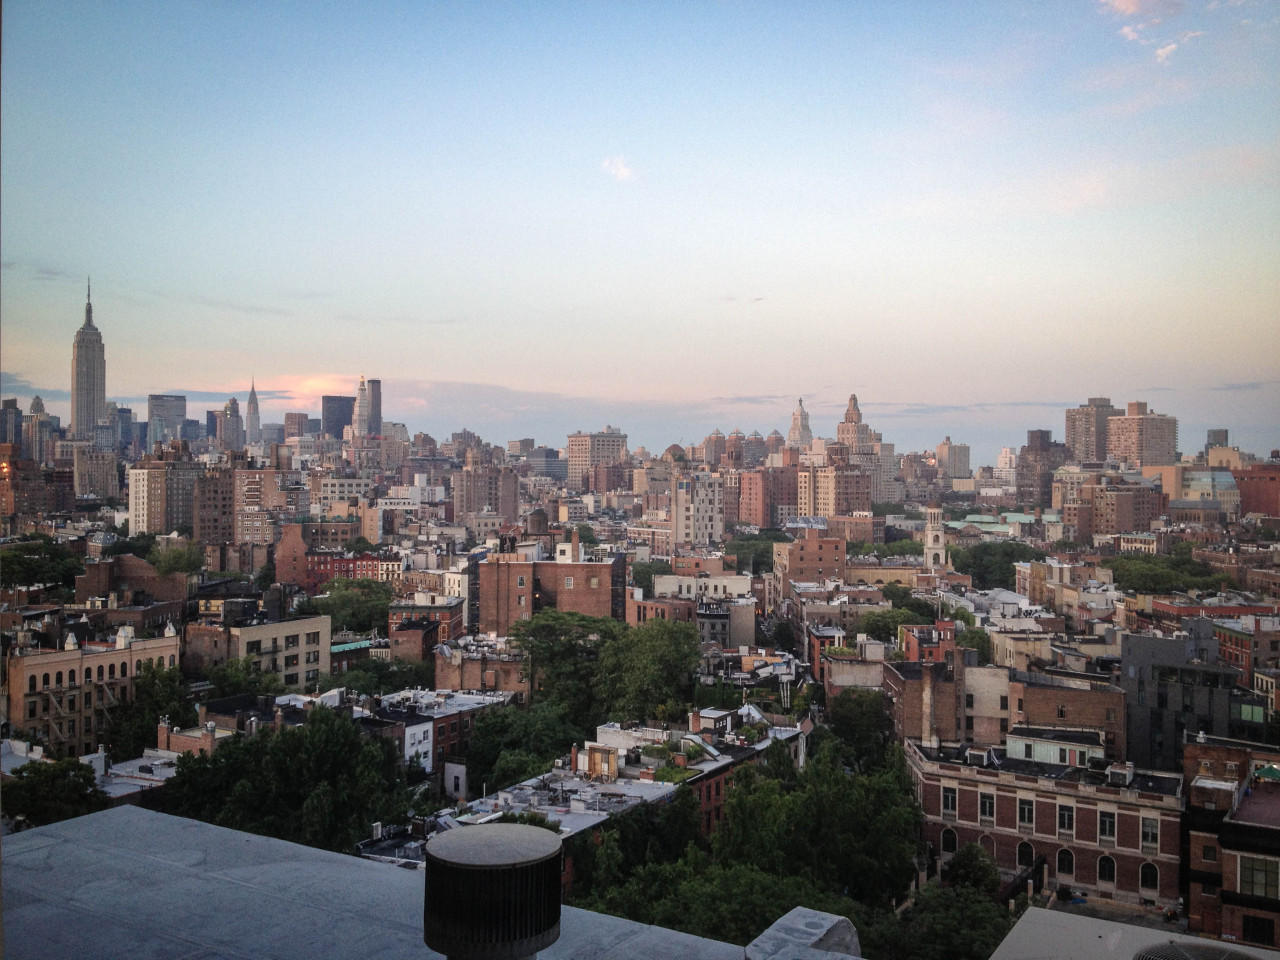 “ Summer sunset, West Village, NYC
”